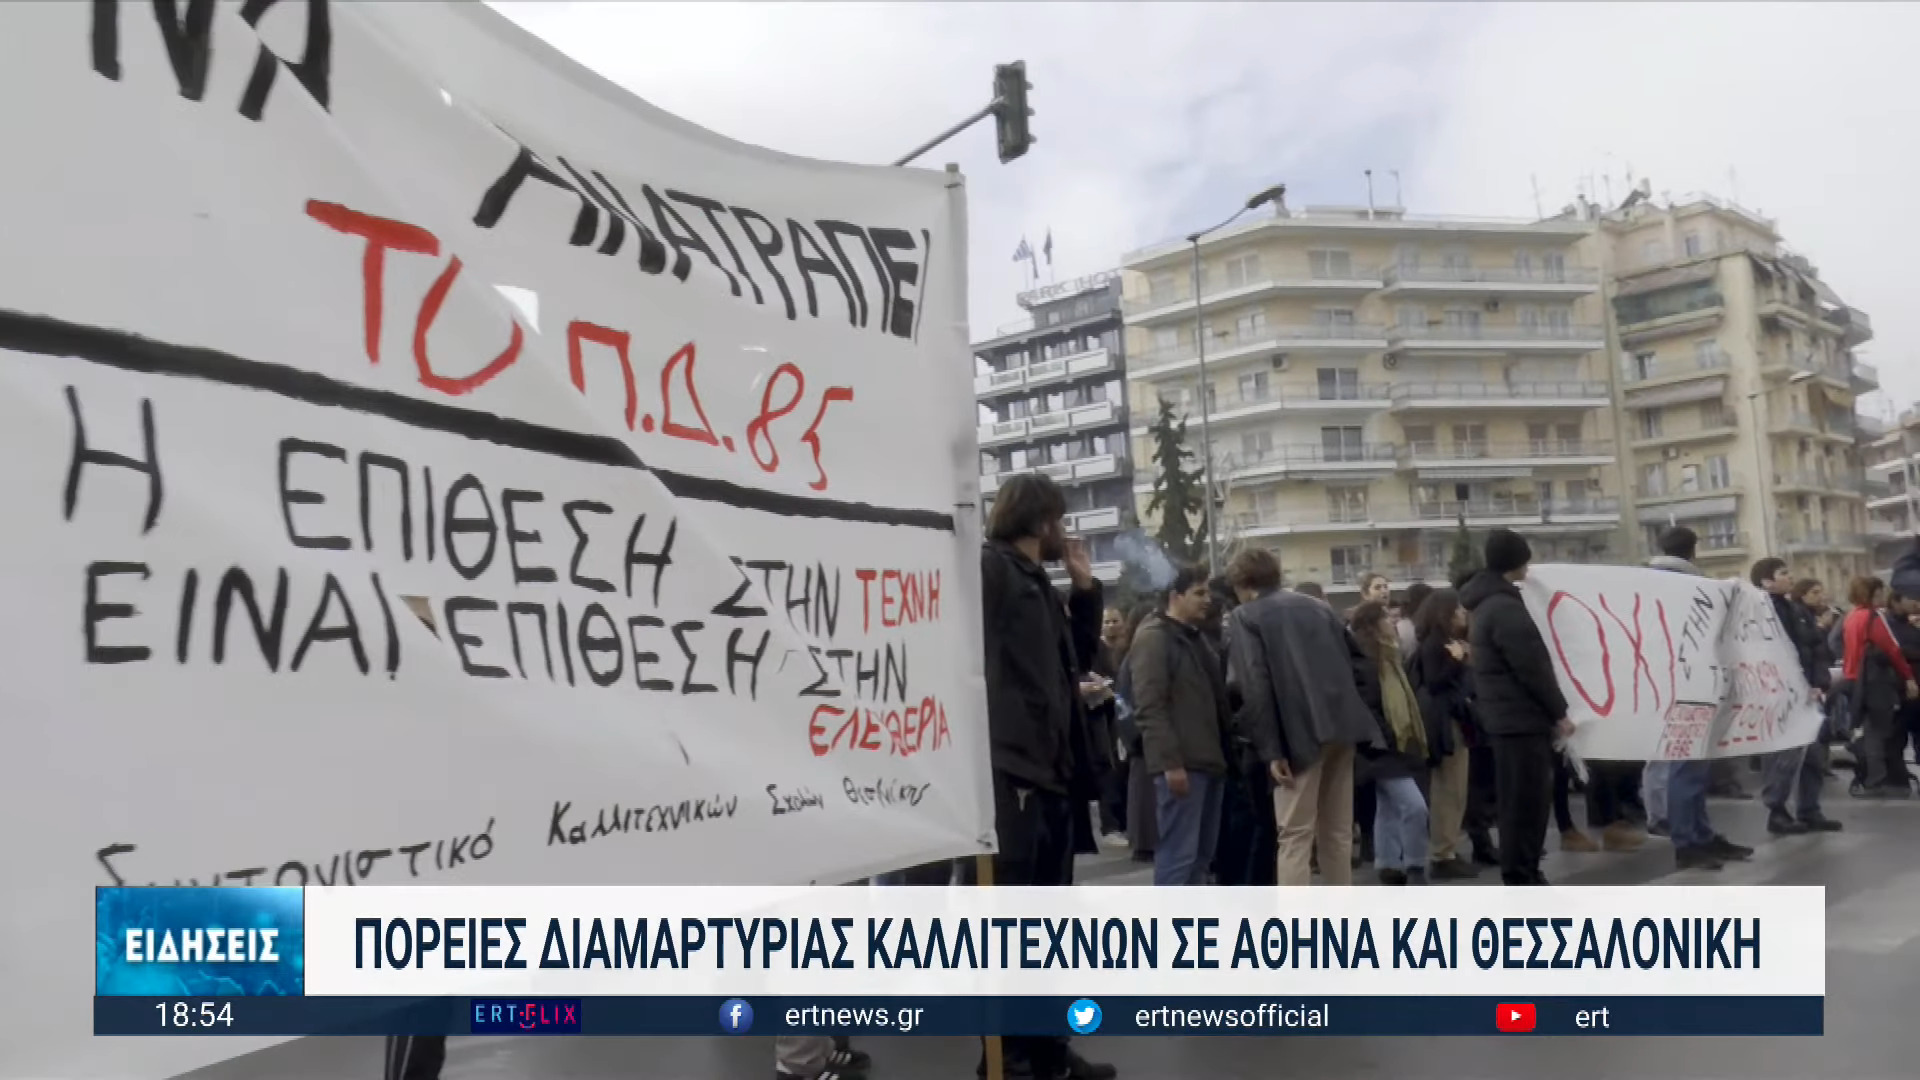 Στους δρόμους της Θεσσαλονίκης κατέβηκαν καλλιτέχνες διεκδικώντας την απόσυρση του Προεδρικού Διατάγματος 85